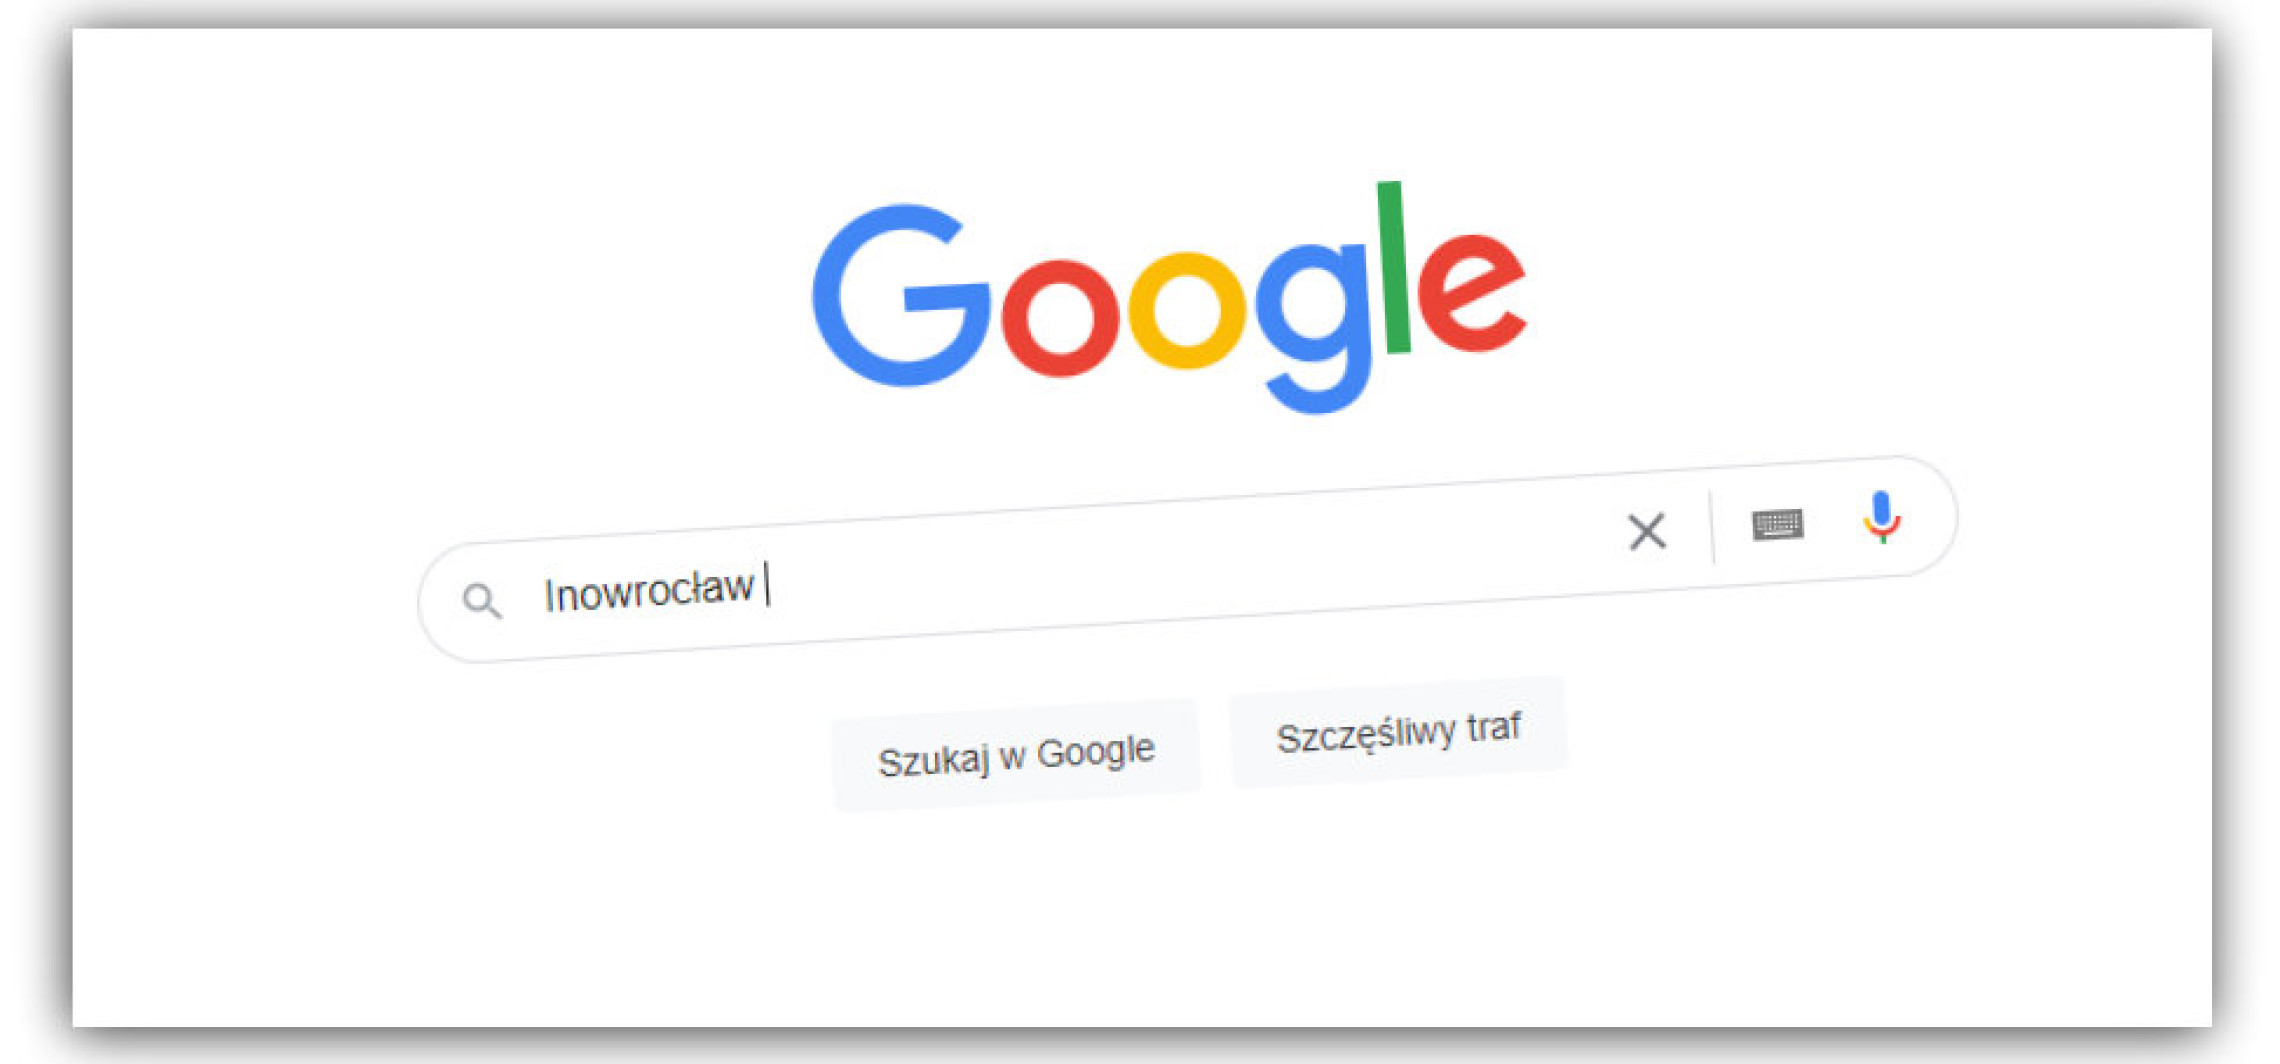 Inowrocław - "Inowrocław" i... - sprawdziliśmy, co internauci najczęściej wpisują w Google